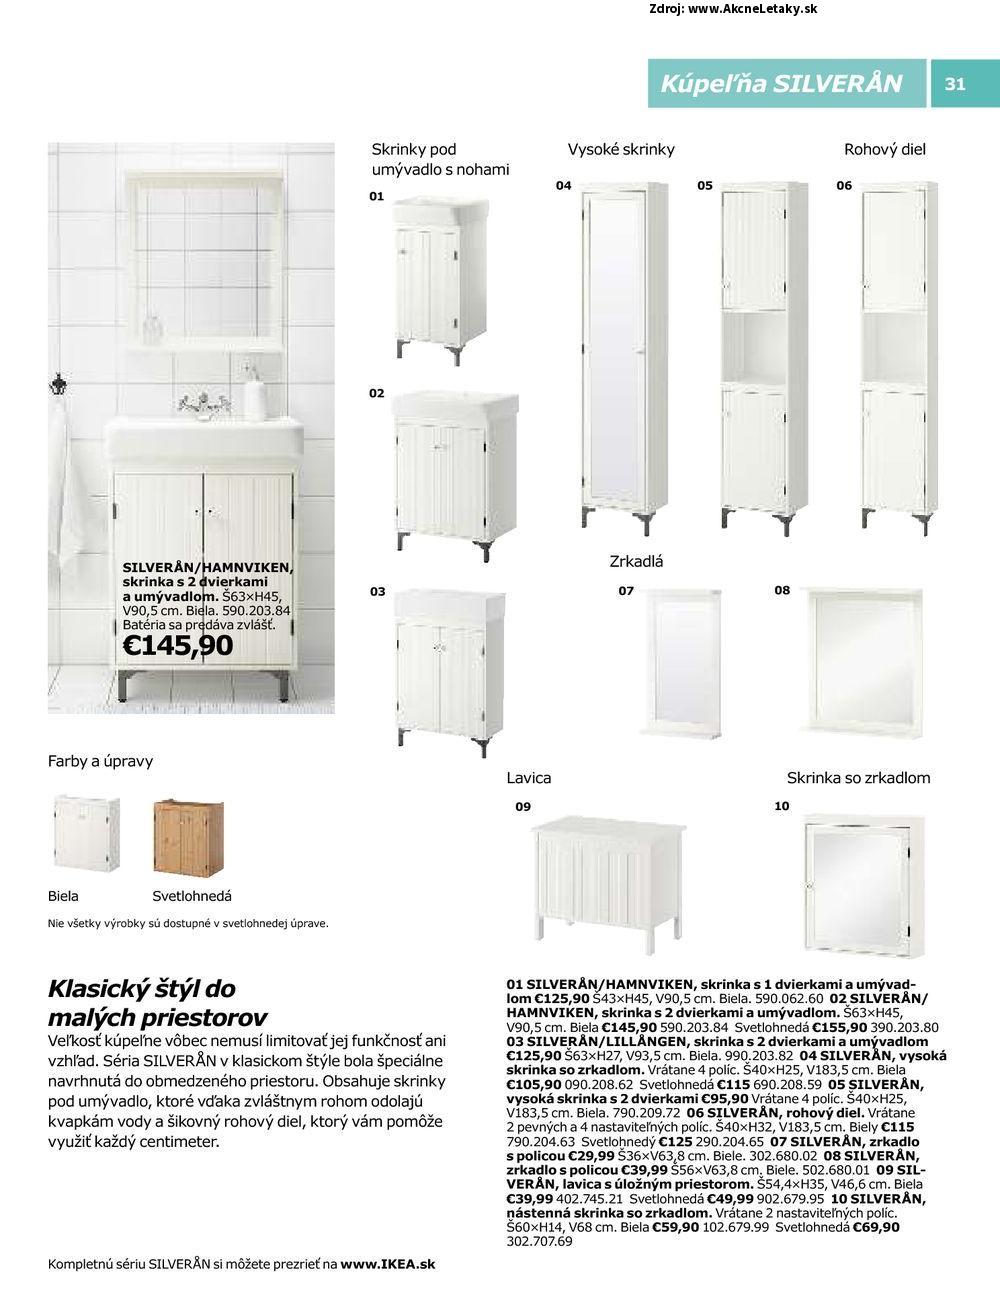 Letk Ikea - strana 31